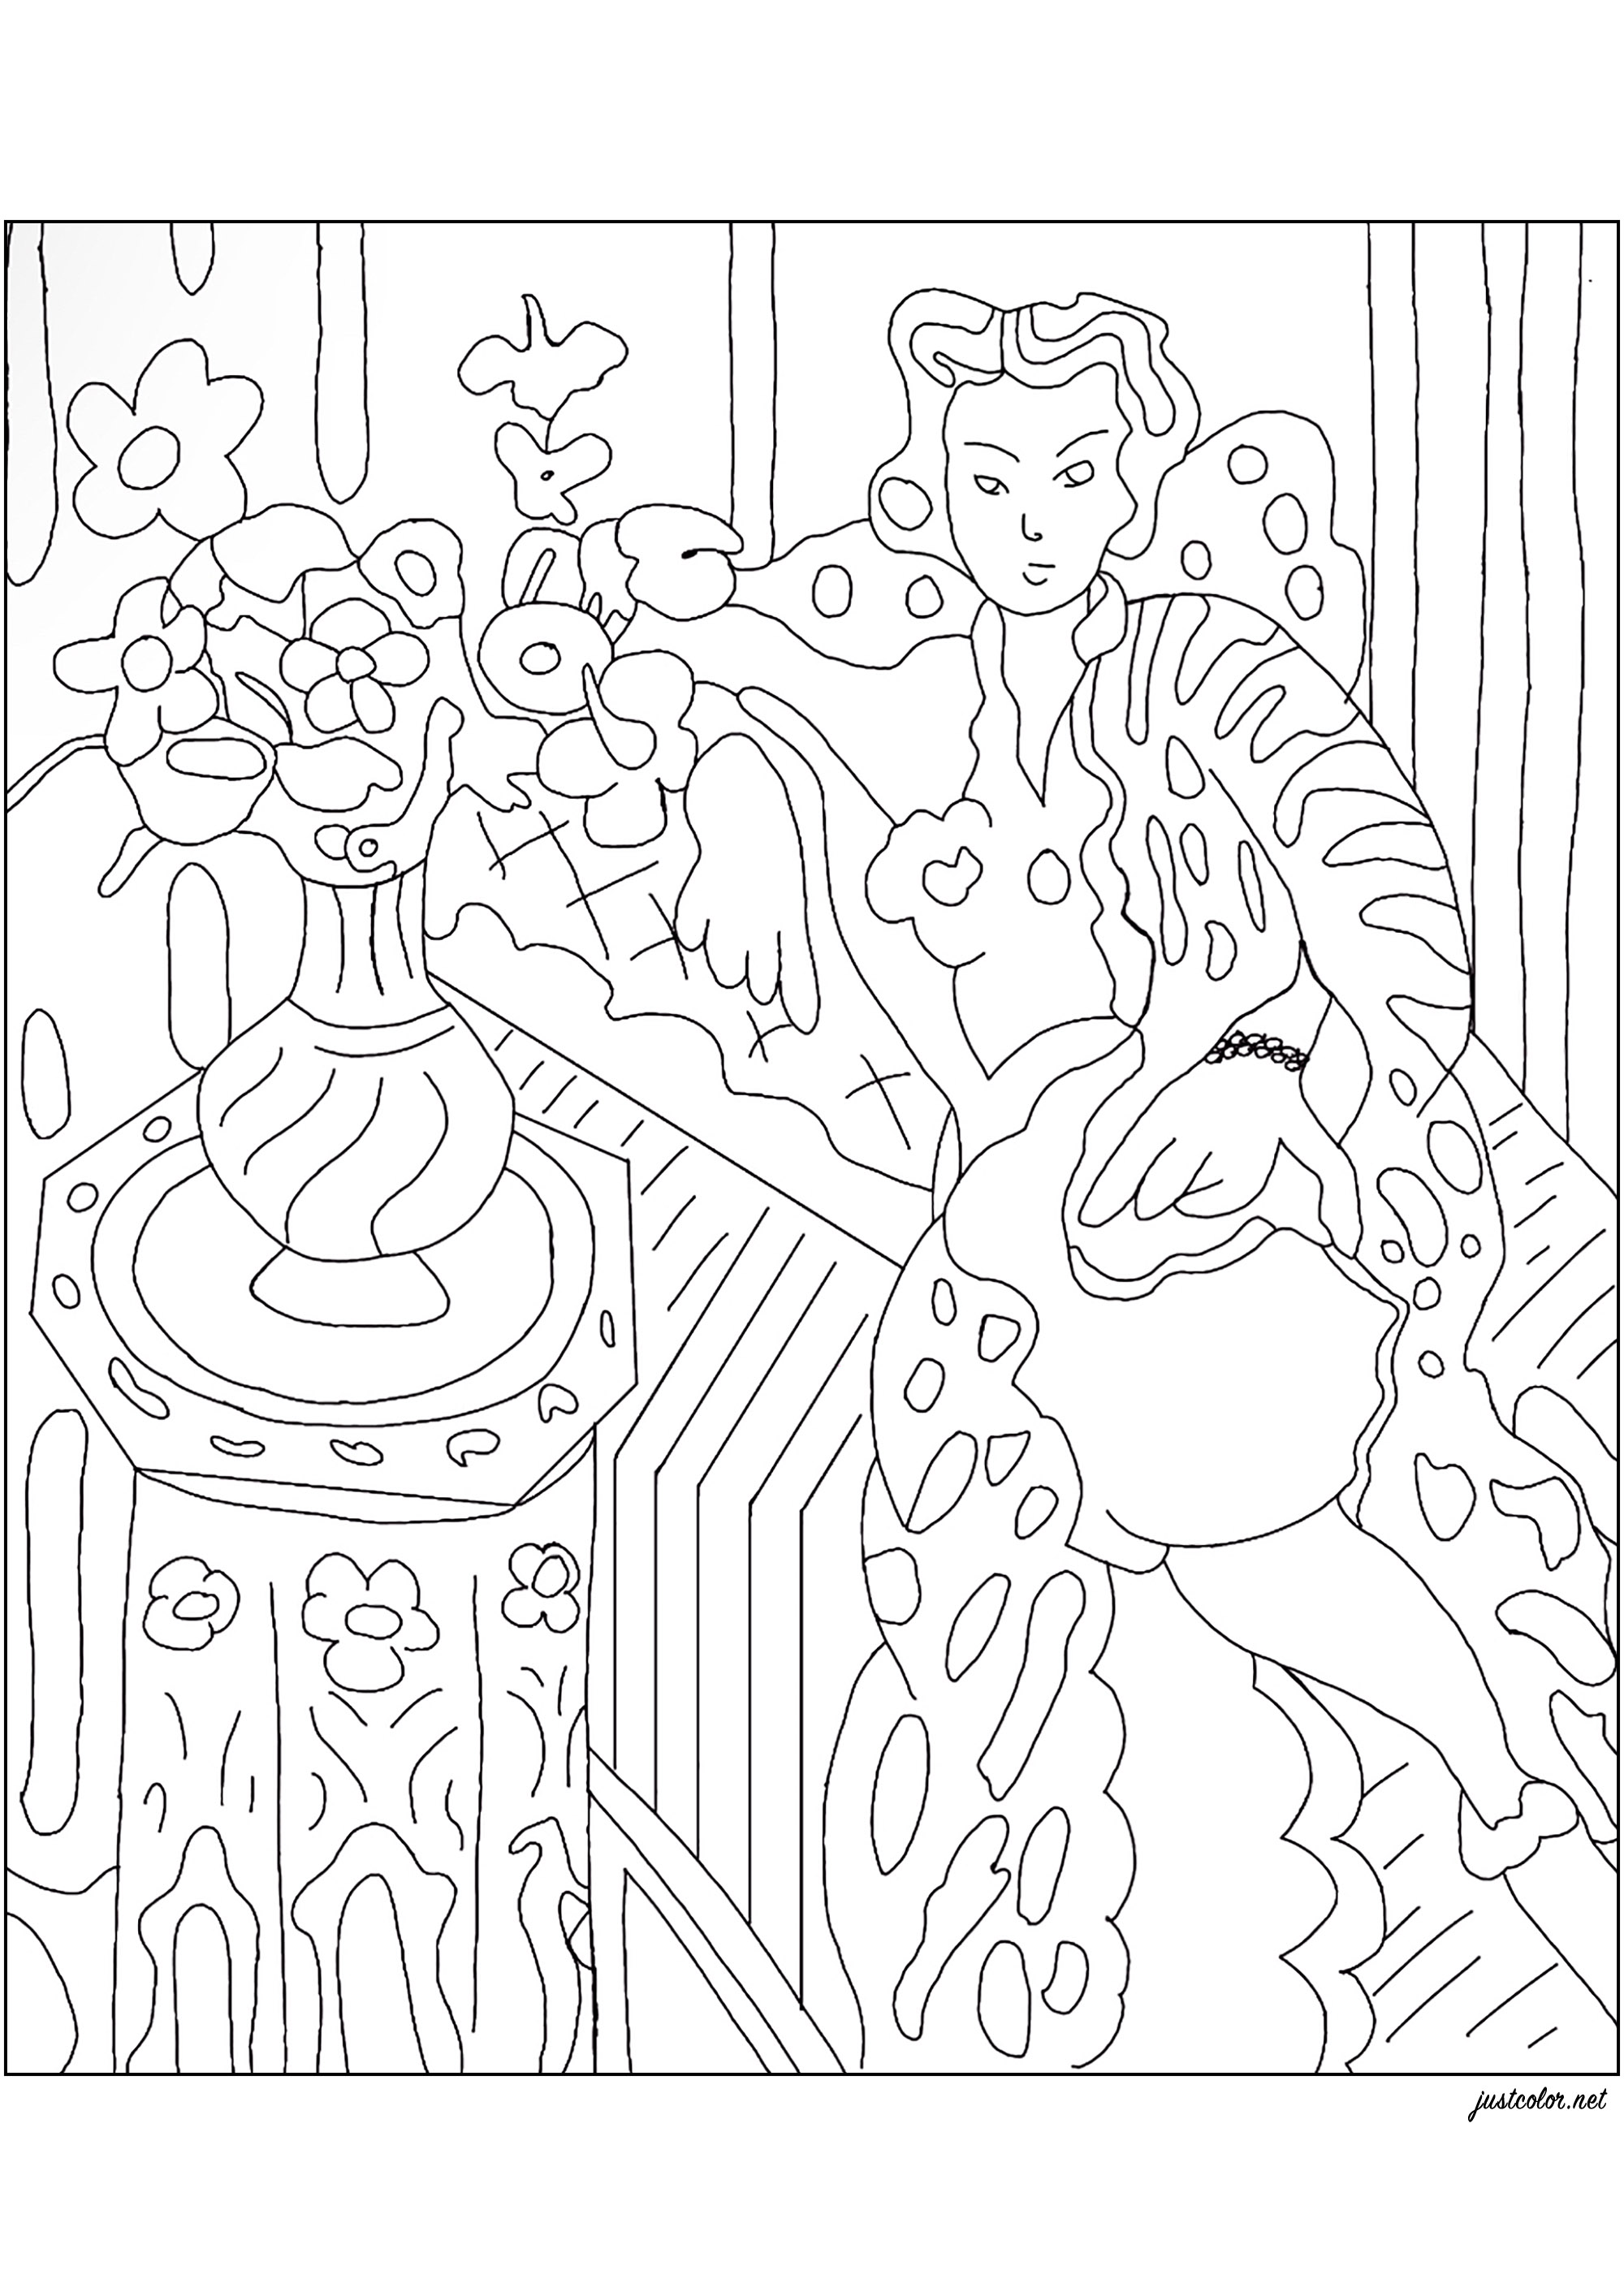 Kolorit aus 'Odalisque a la robe persane jaune' (1937) von Henri Matisse. In diesem Gemälde verwendet Matisse sein vertrautes Modell, Hélène Galtzine, um eine Figur in einem gelben persischen Kleid darzustellen, die von persönlichen Gegenständen des Malers umgeben ist und ein traumhaftes Interieur schafft. Inspiriert von seinen Reisen in den Maghreb griff Matisse das von den orientalischen Aktdarstellungen übernommene Motiv der Odaliske wieder auf, modernisierte es und verwandelte es in den Archetypus der modernen Frau der Zwischenkriegszeit, Künstler : Jade F